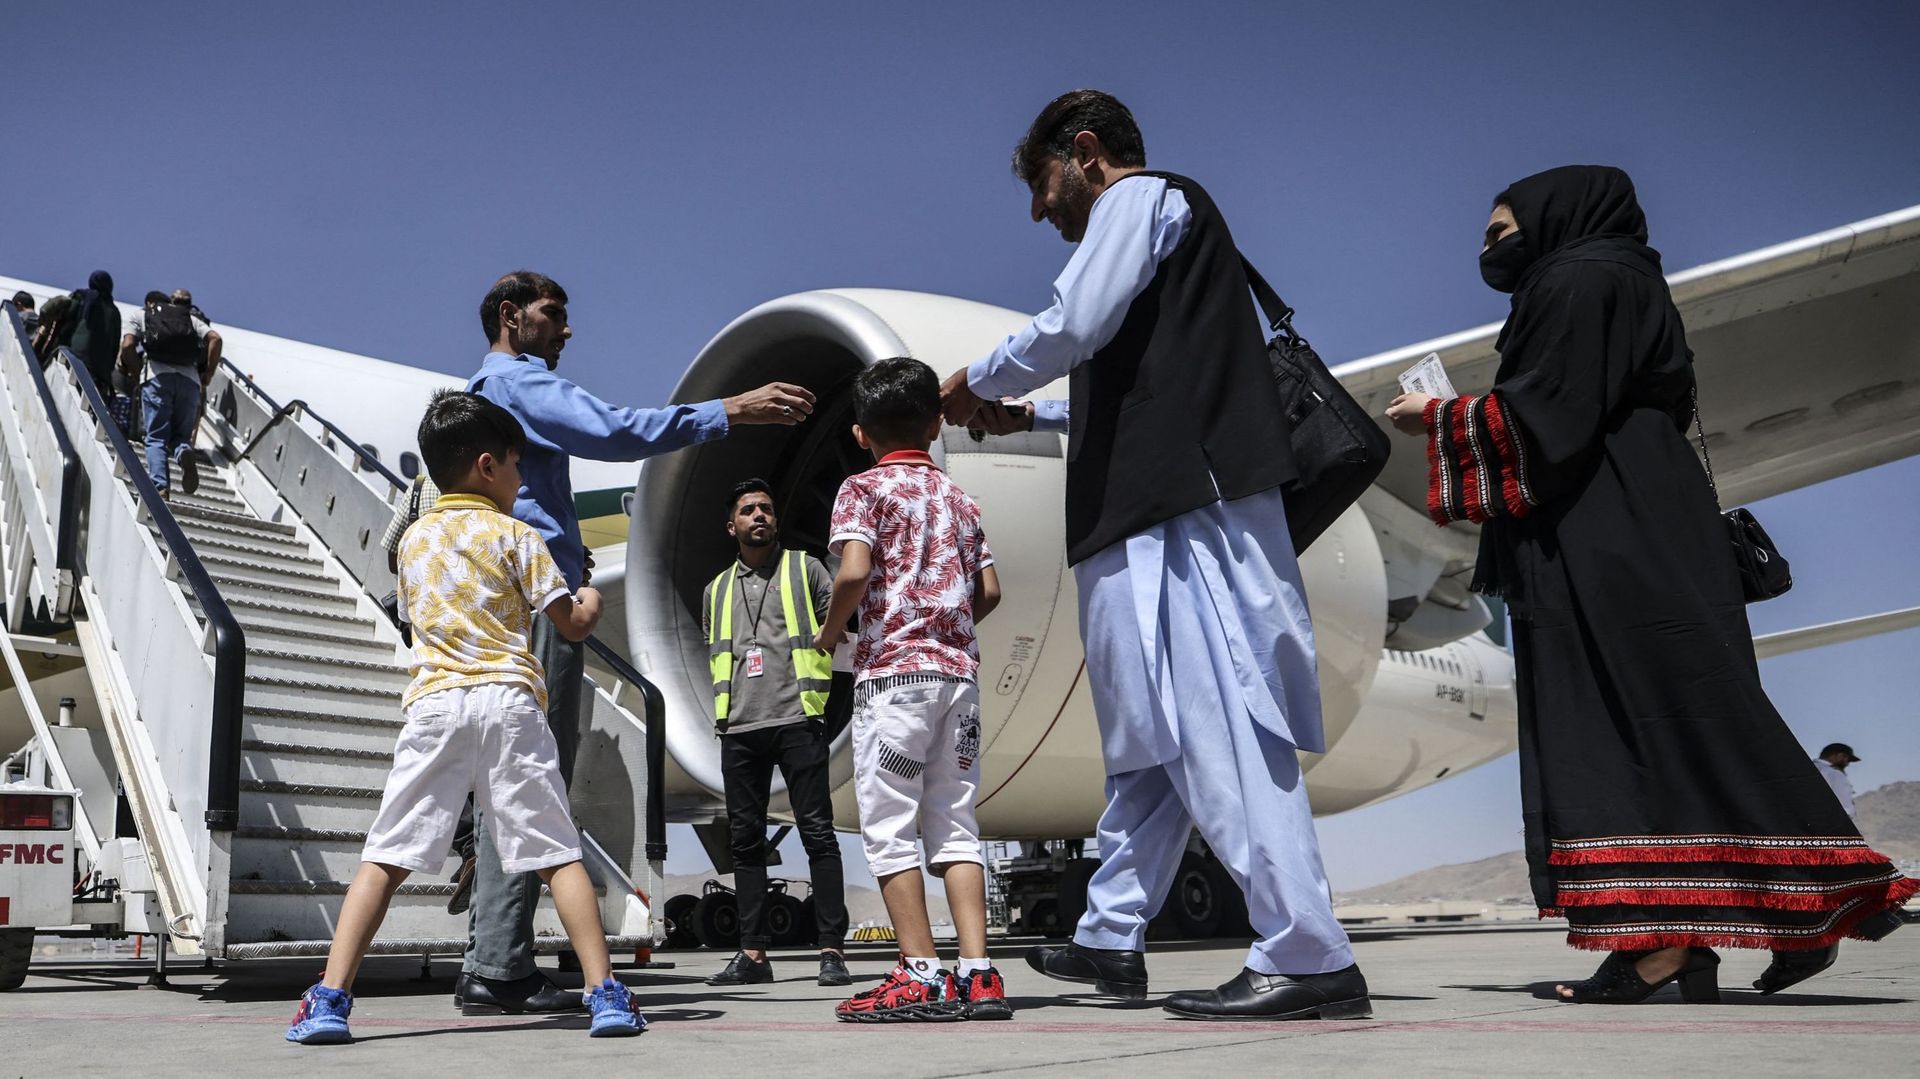 Des passagers font la queue pour embarquer dans un avion de Pakistan International Airlines à l'aéroport de Kaboul, le 13 septembre 2021.